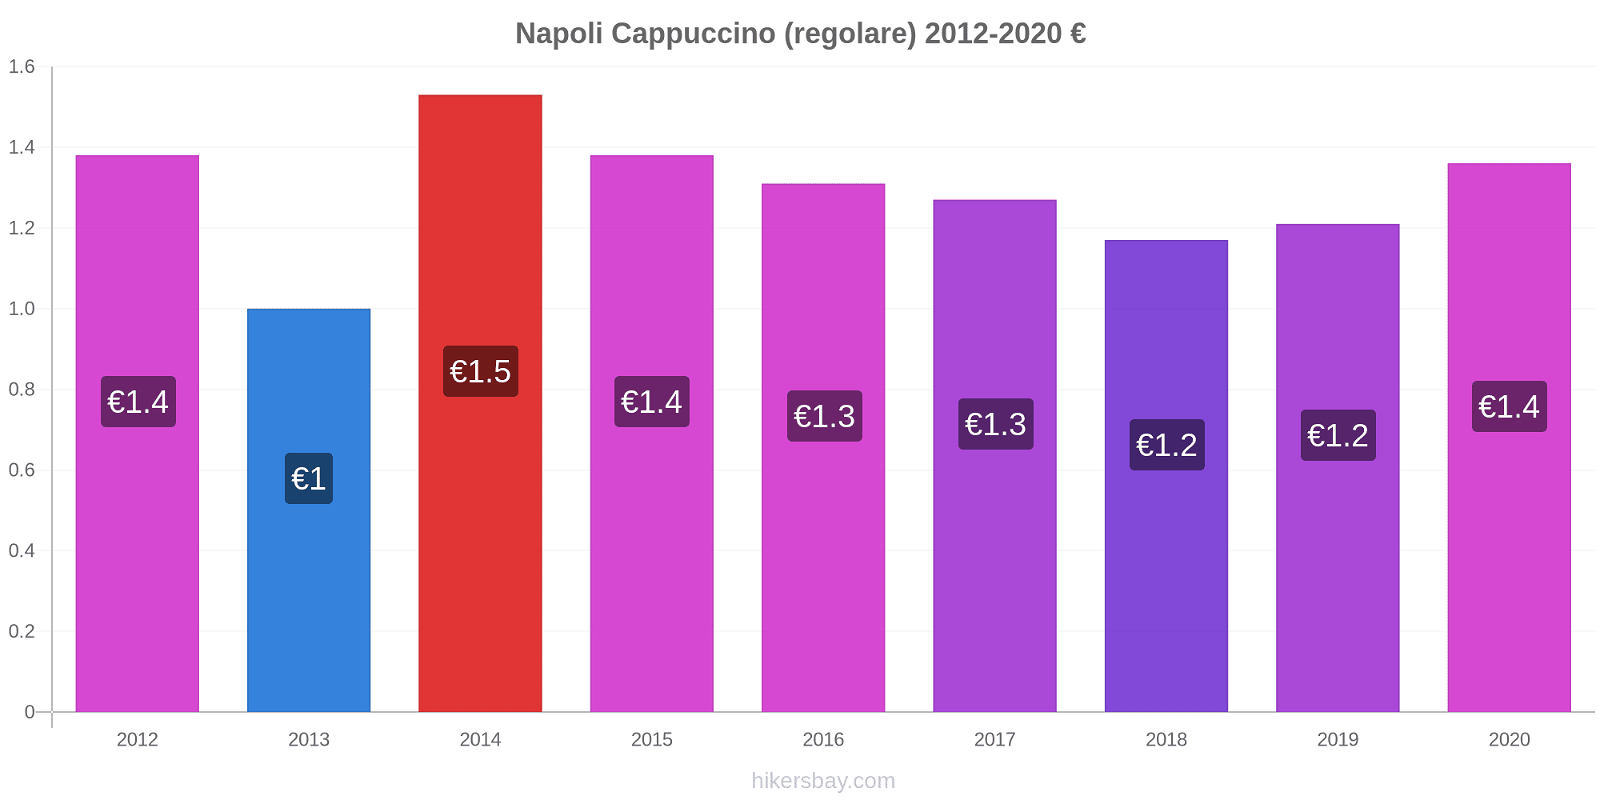 Napoli variazioni di prezzo Cappuccino (normale) hikersbay.com